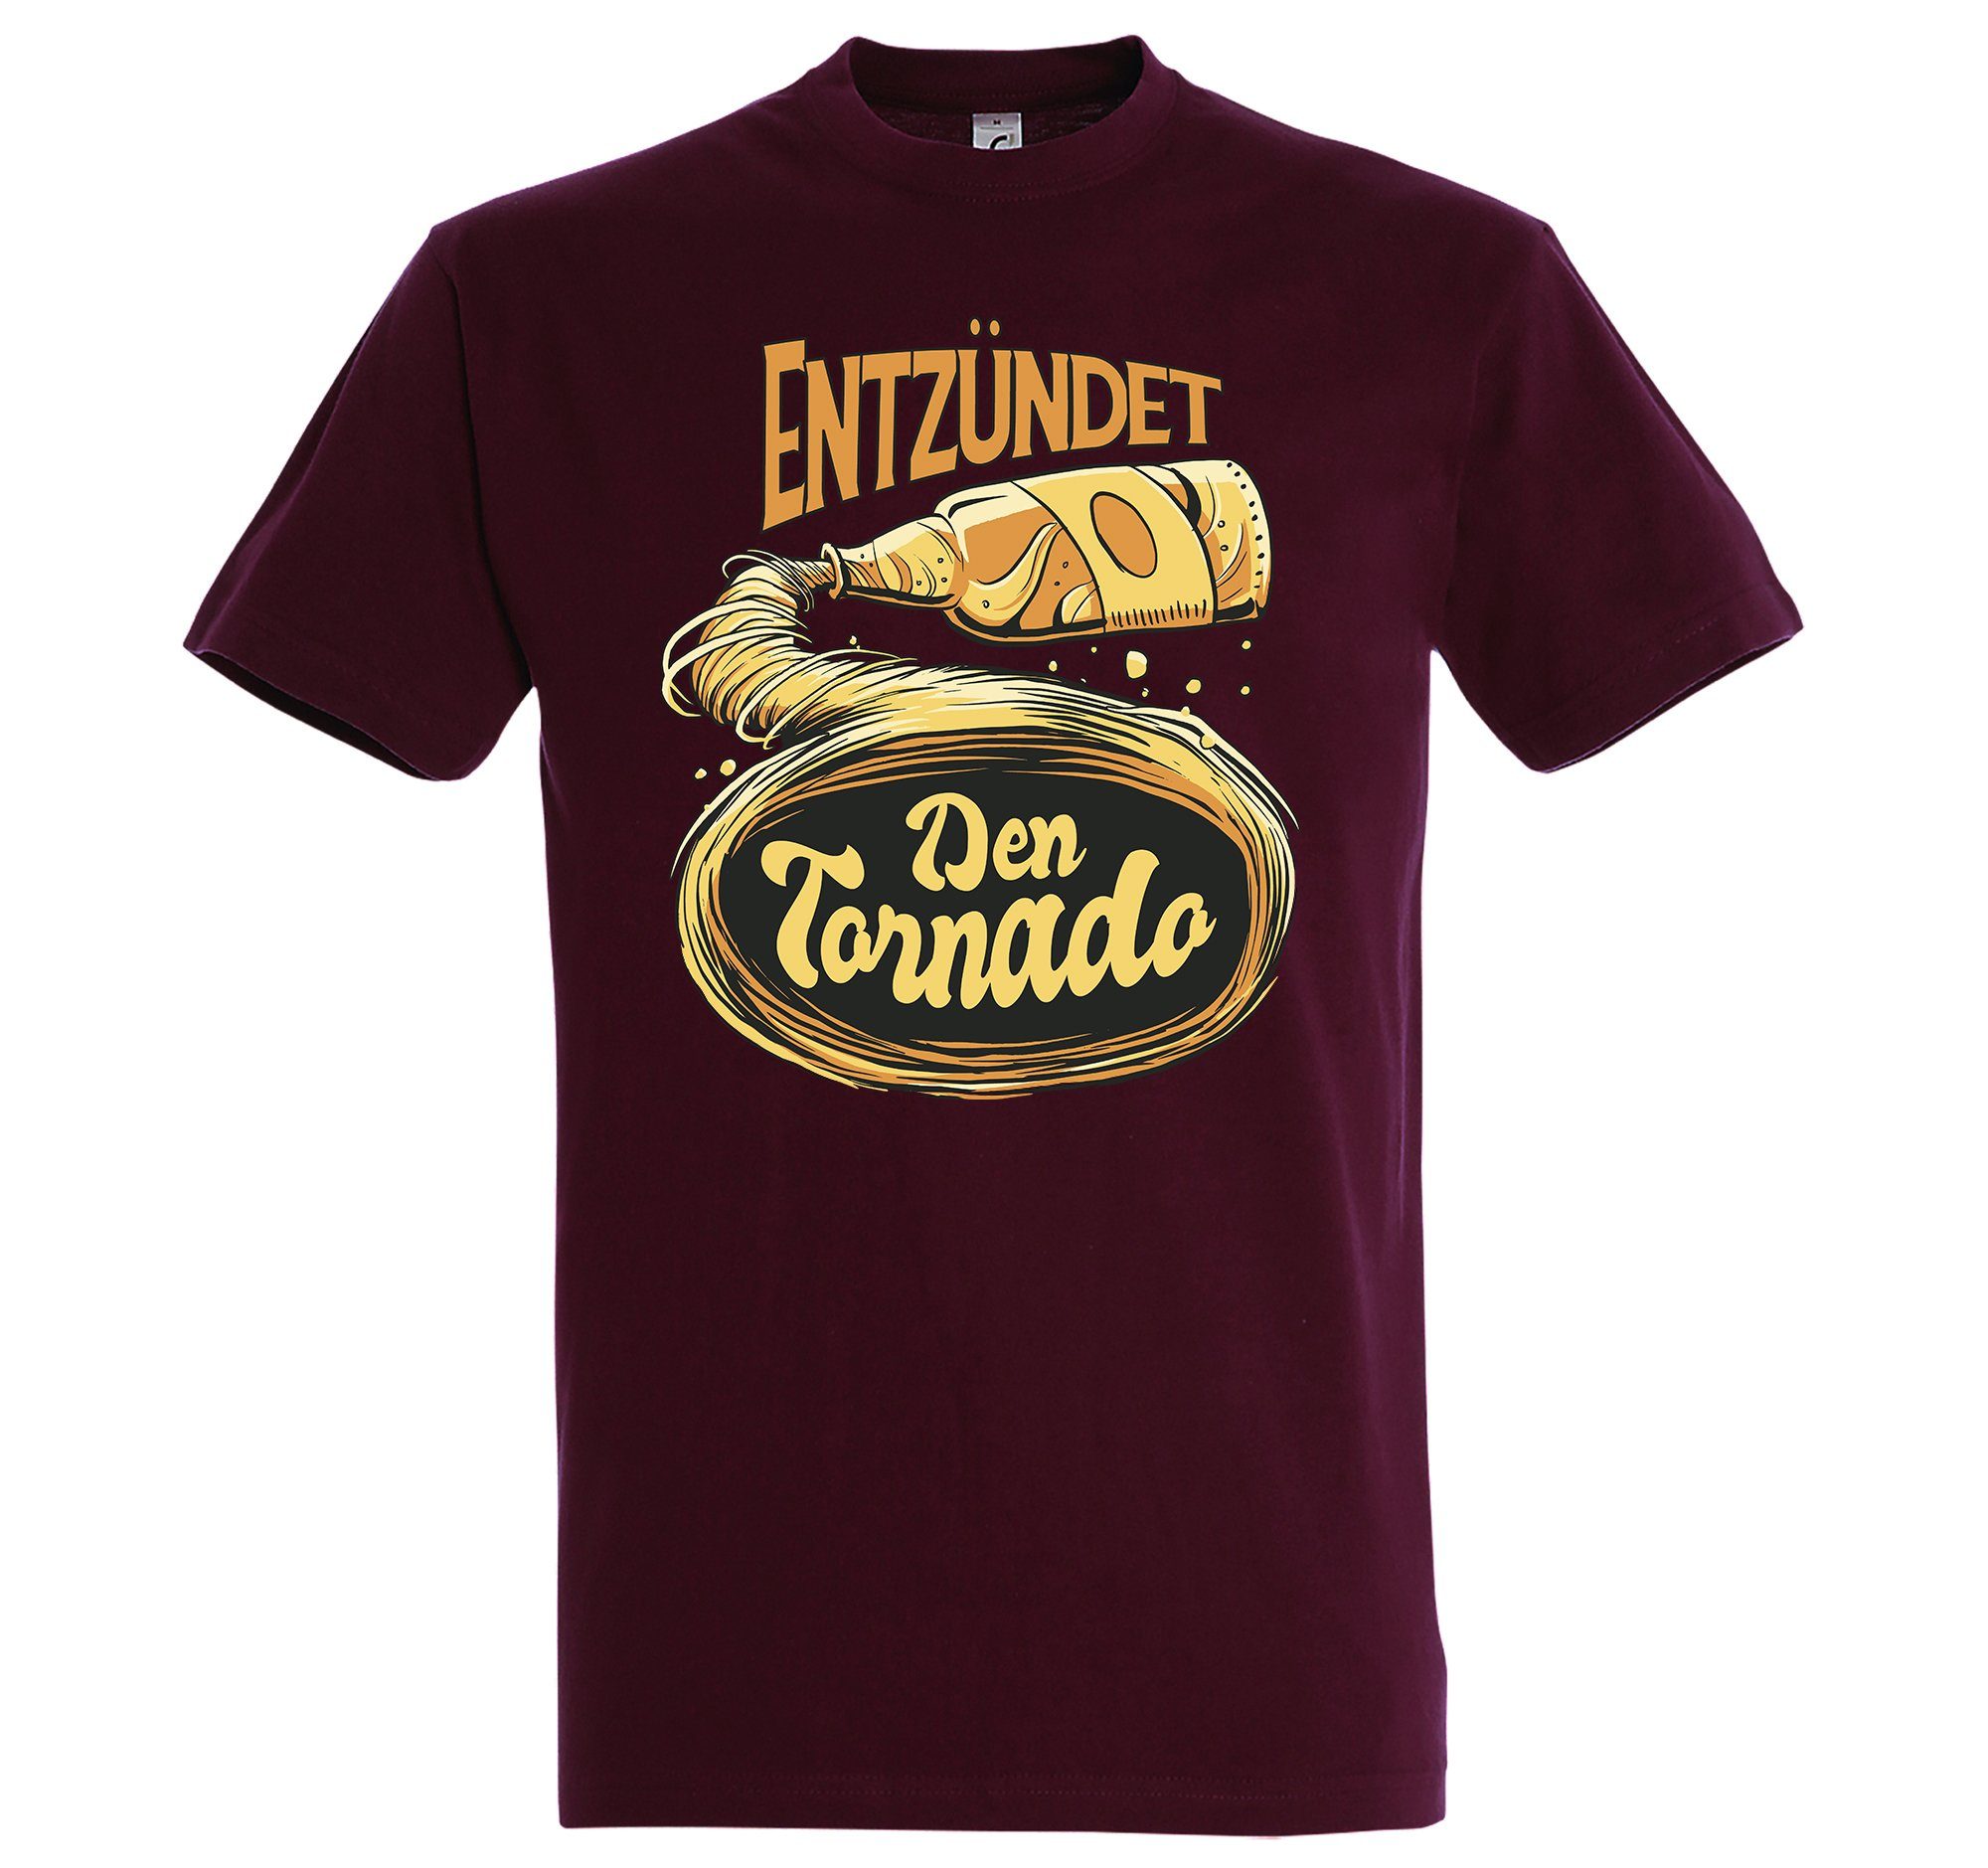 Youth Designz T-Shirt mit Den trendigem Bier Shirt Burgund Tornado! Frontprint Entzündet Herren